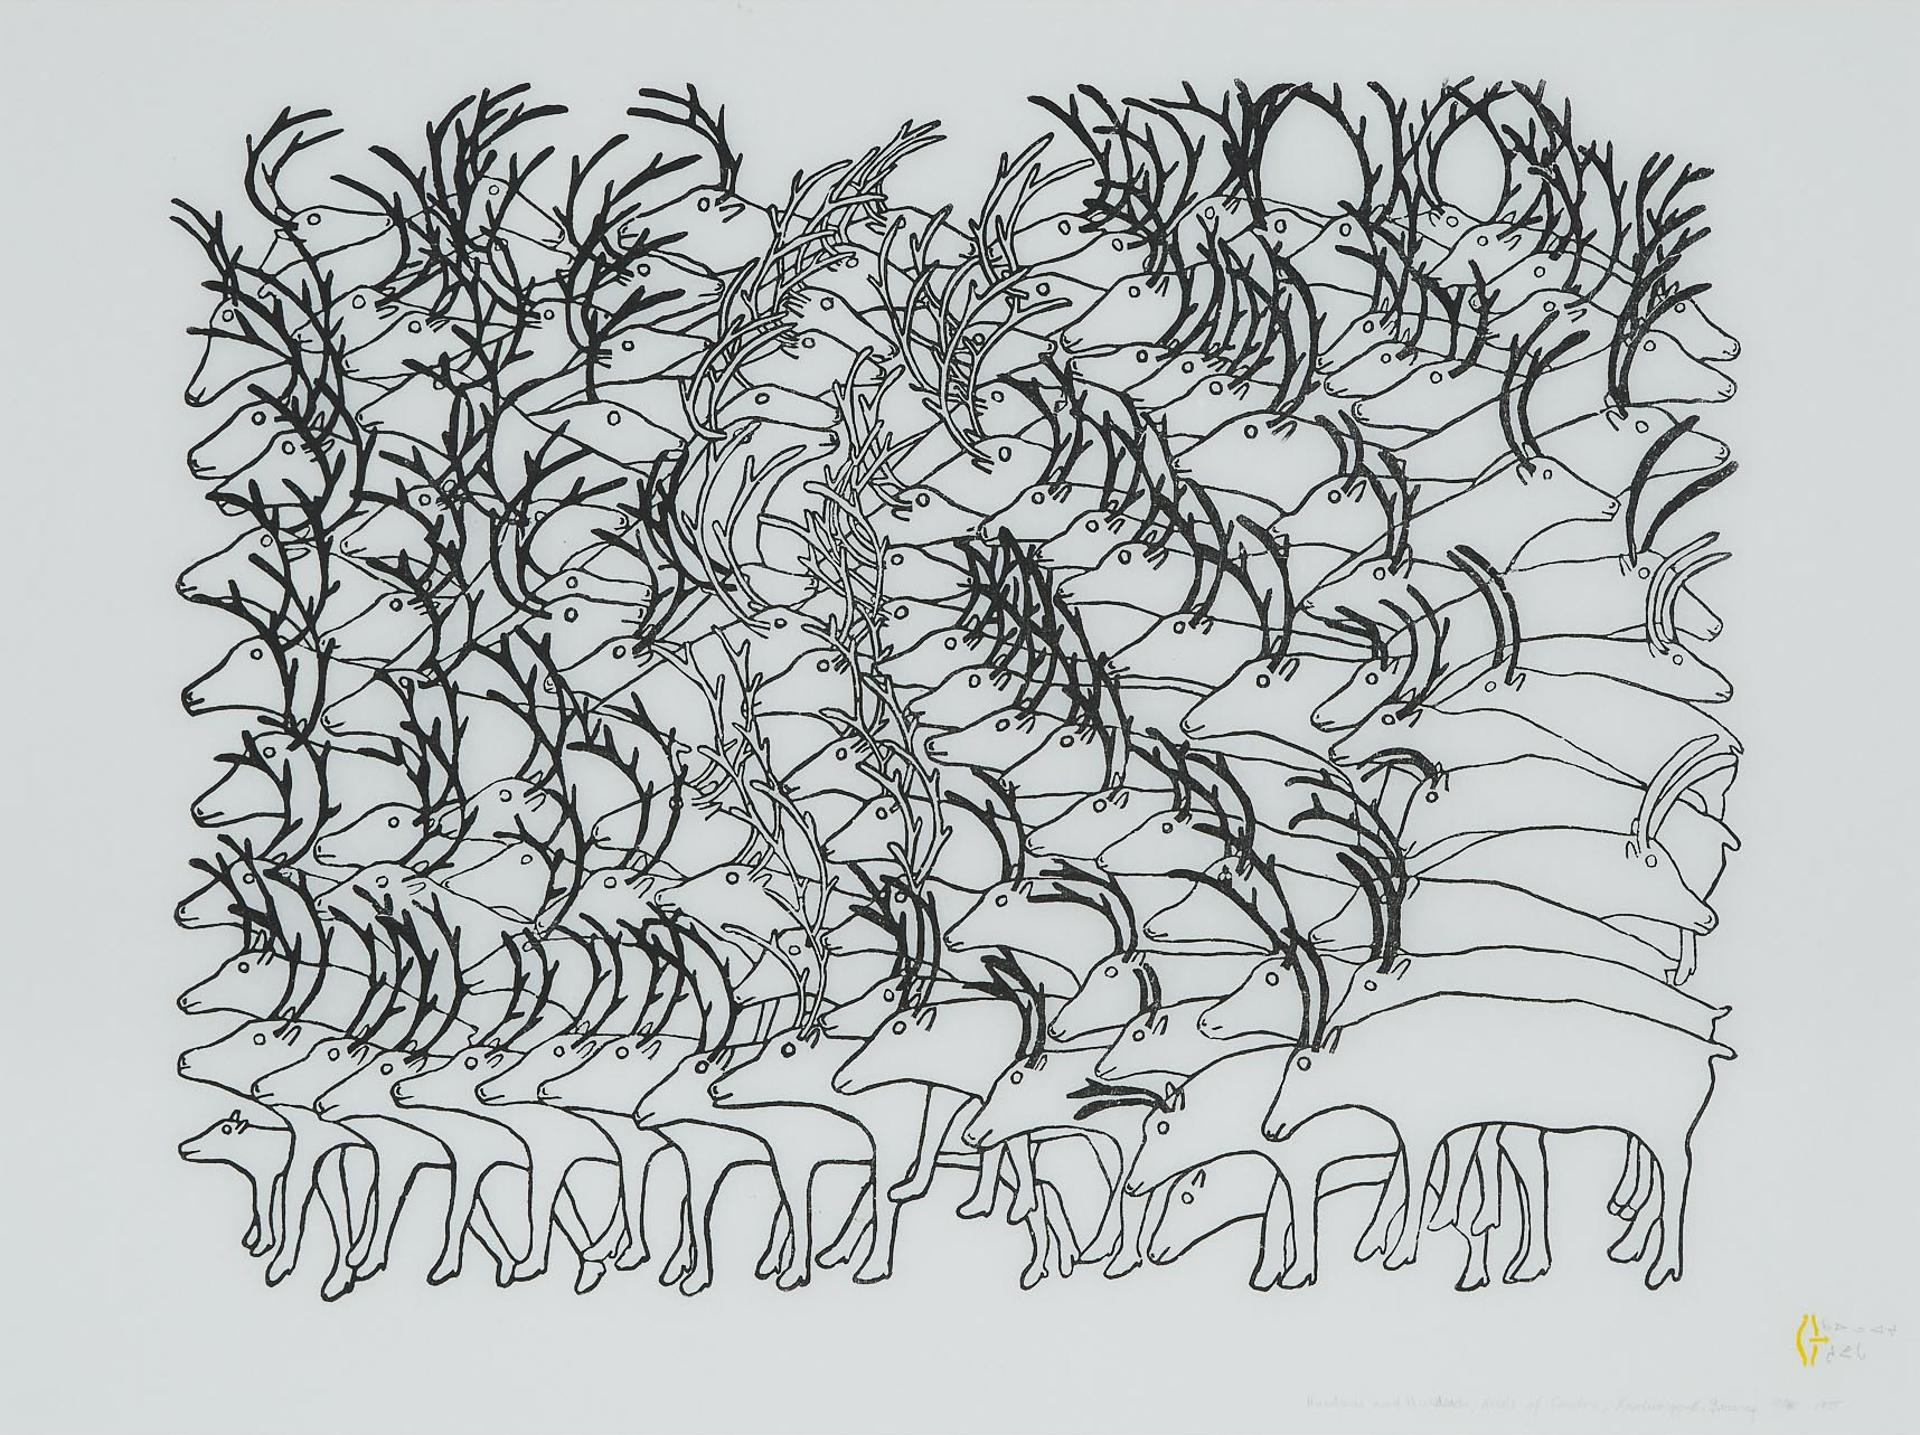 Ruth Qaulluaryuk (1932) - Hundreds And Hundreds, Herds Of Caribou, 1975